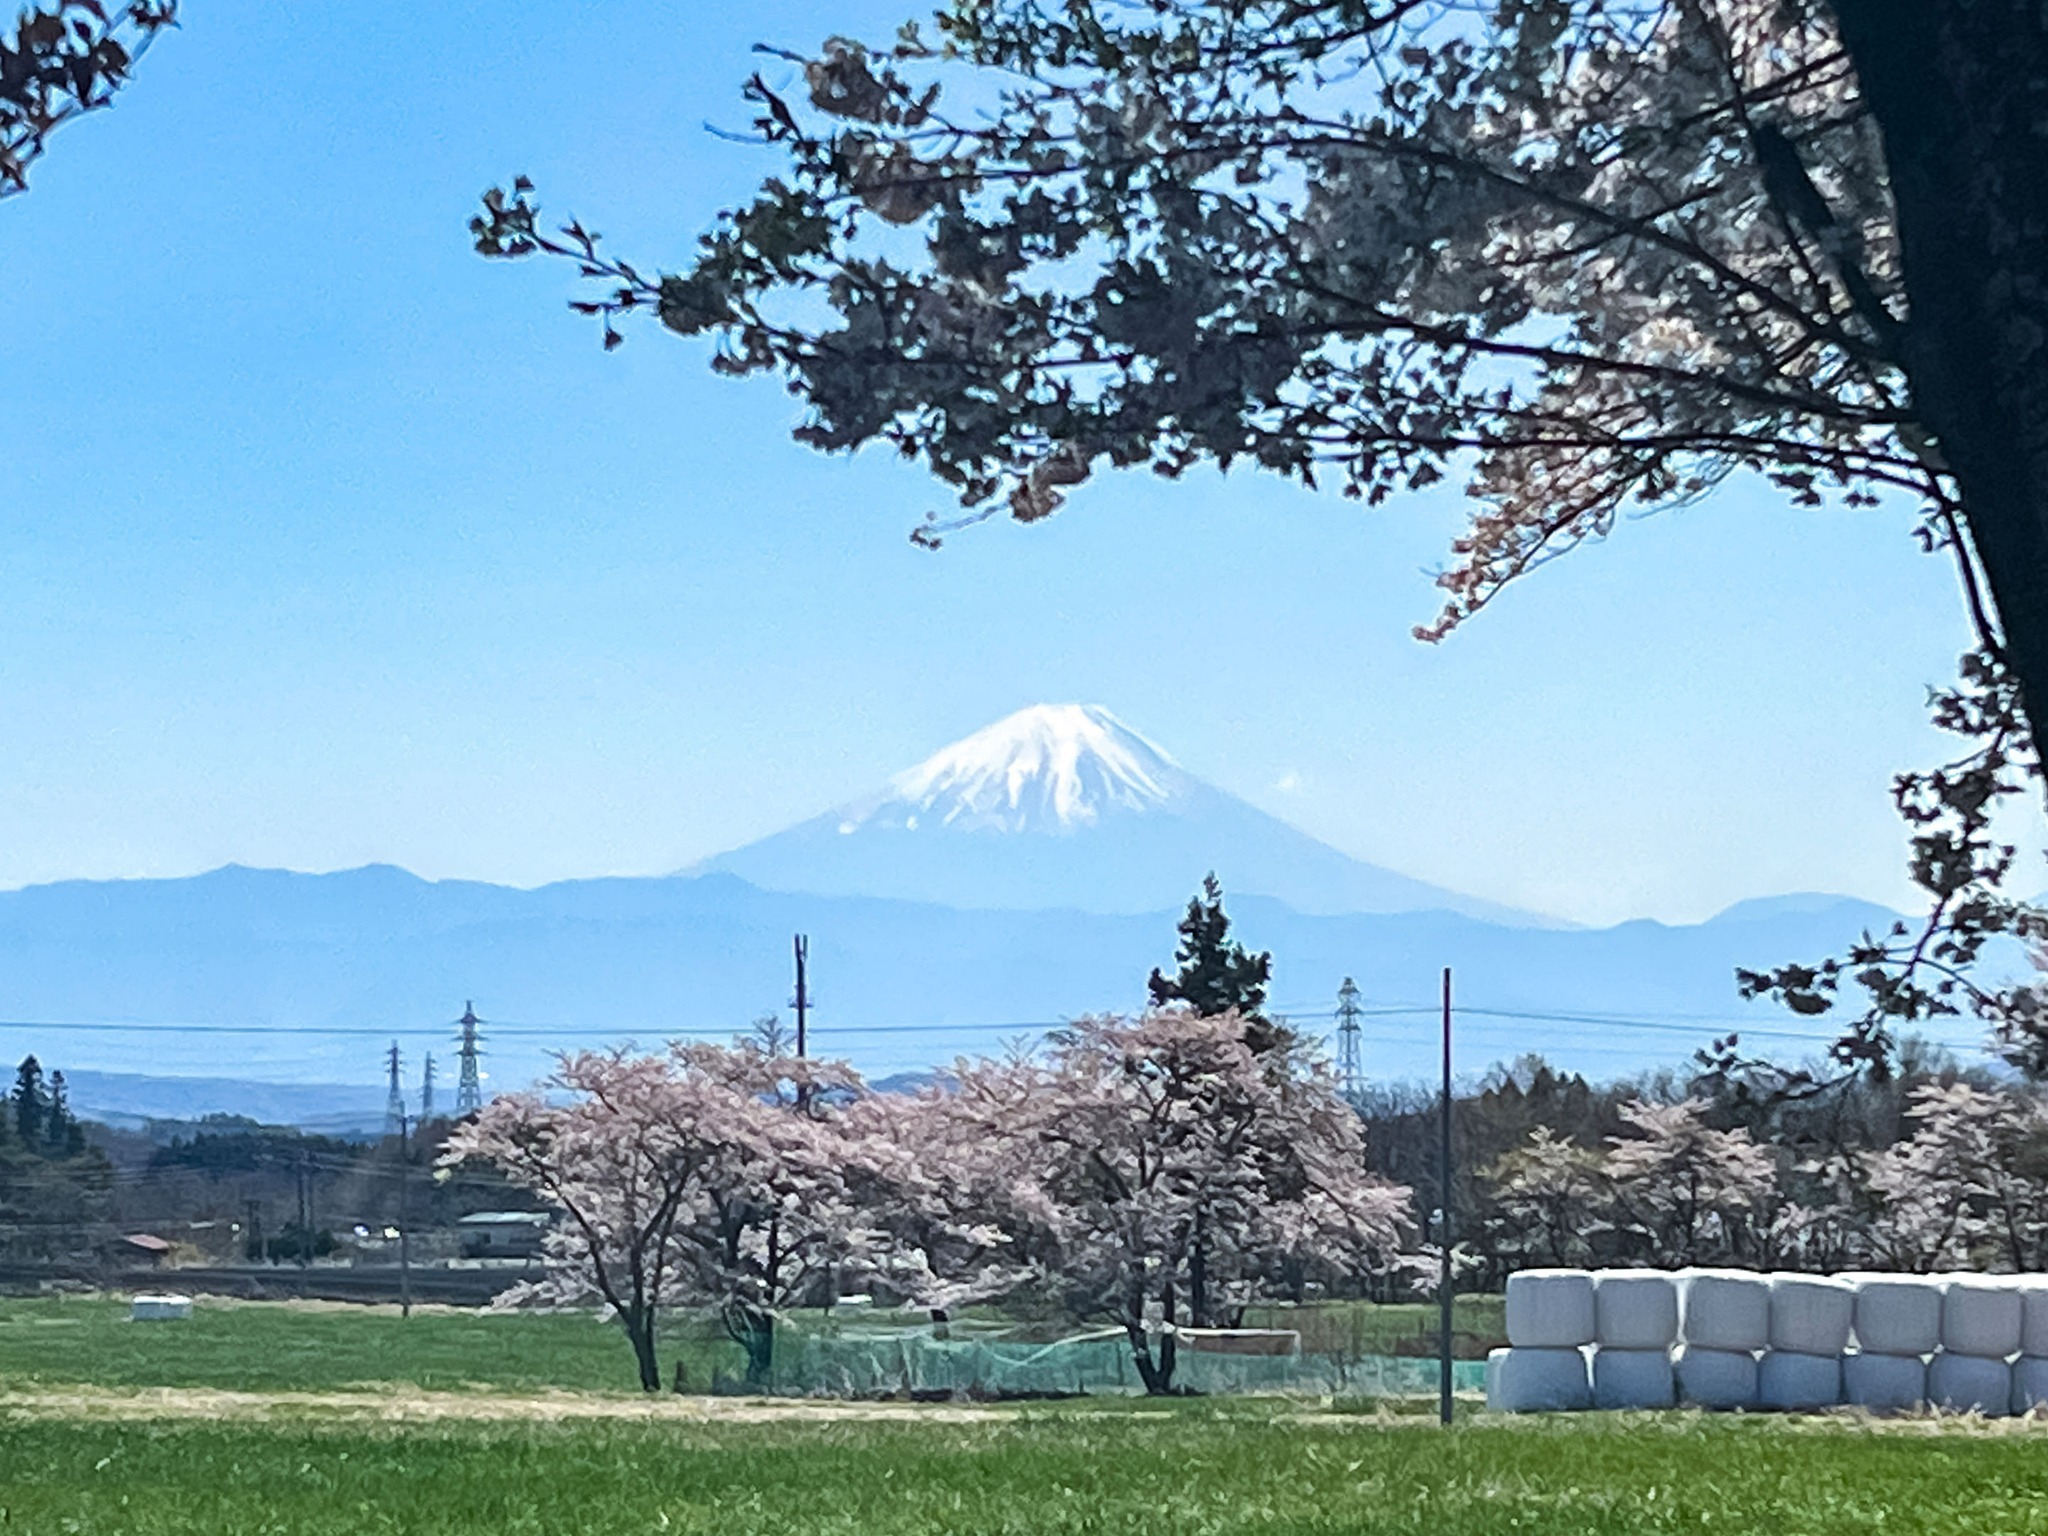 【富士山】のどかな景色の奥には富士山が。日本を旅する嬉しさを感じられる風景をお楽しみください